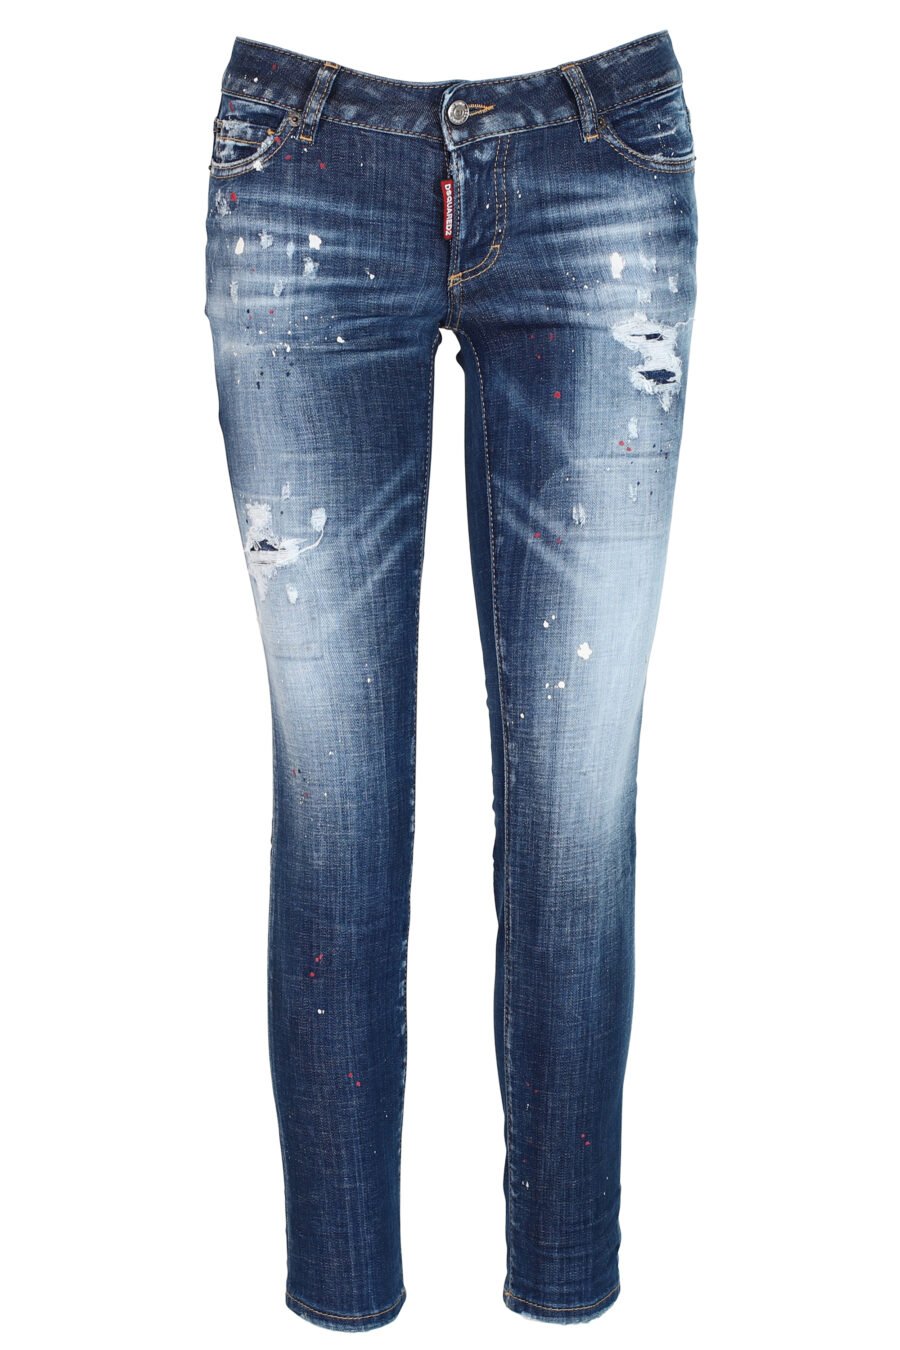 Jeans "Jennifer Jean" blau mit Farbspritzern und verblichenem Effekt - 8052134937259